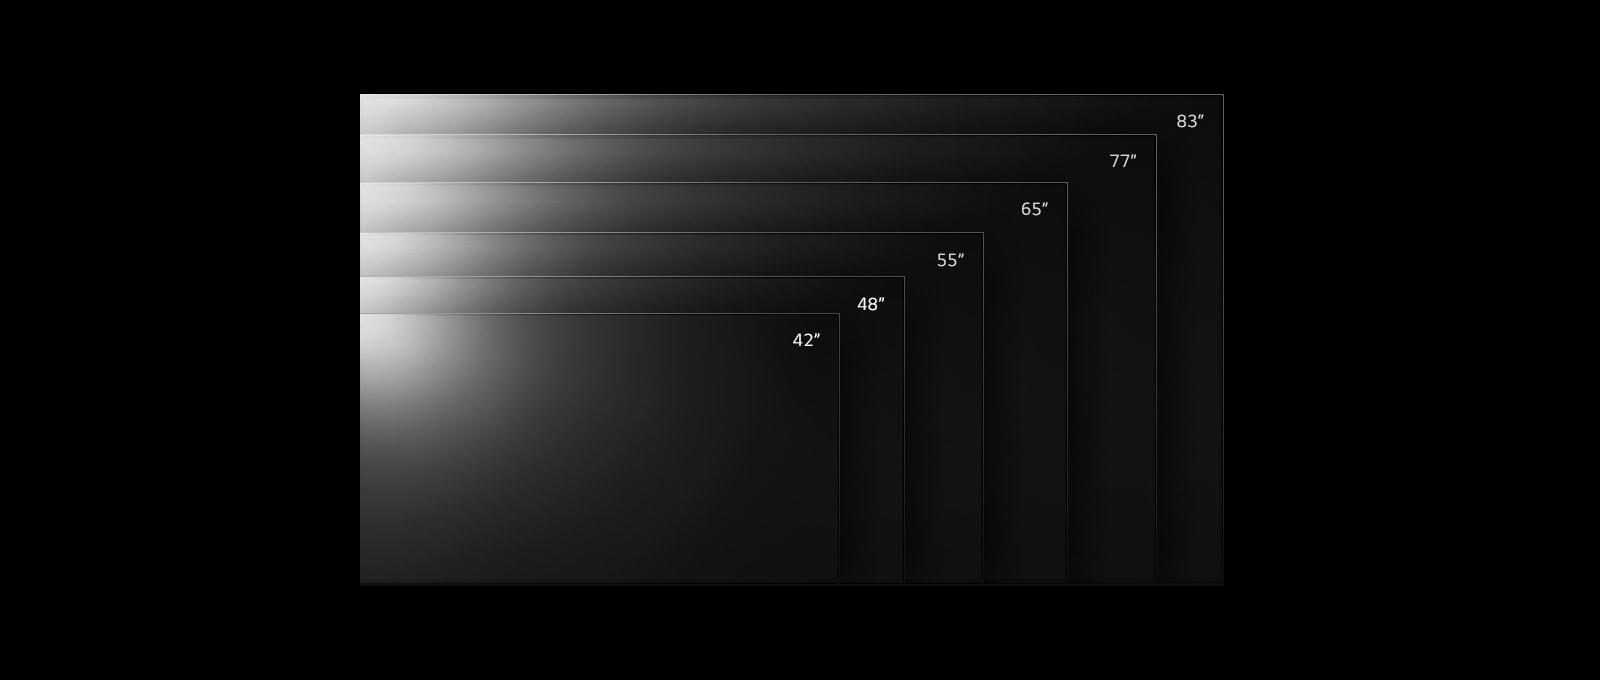 Linia telewizorów LG OLED evo C2 w różnych rozmiarach od 42 do 83 cali